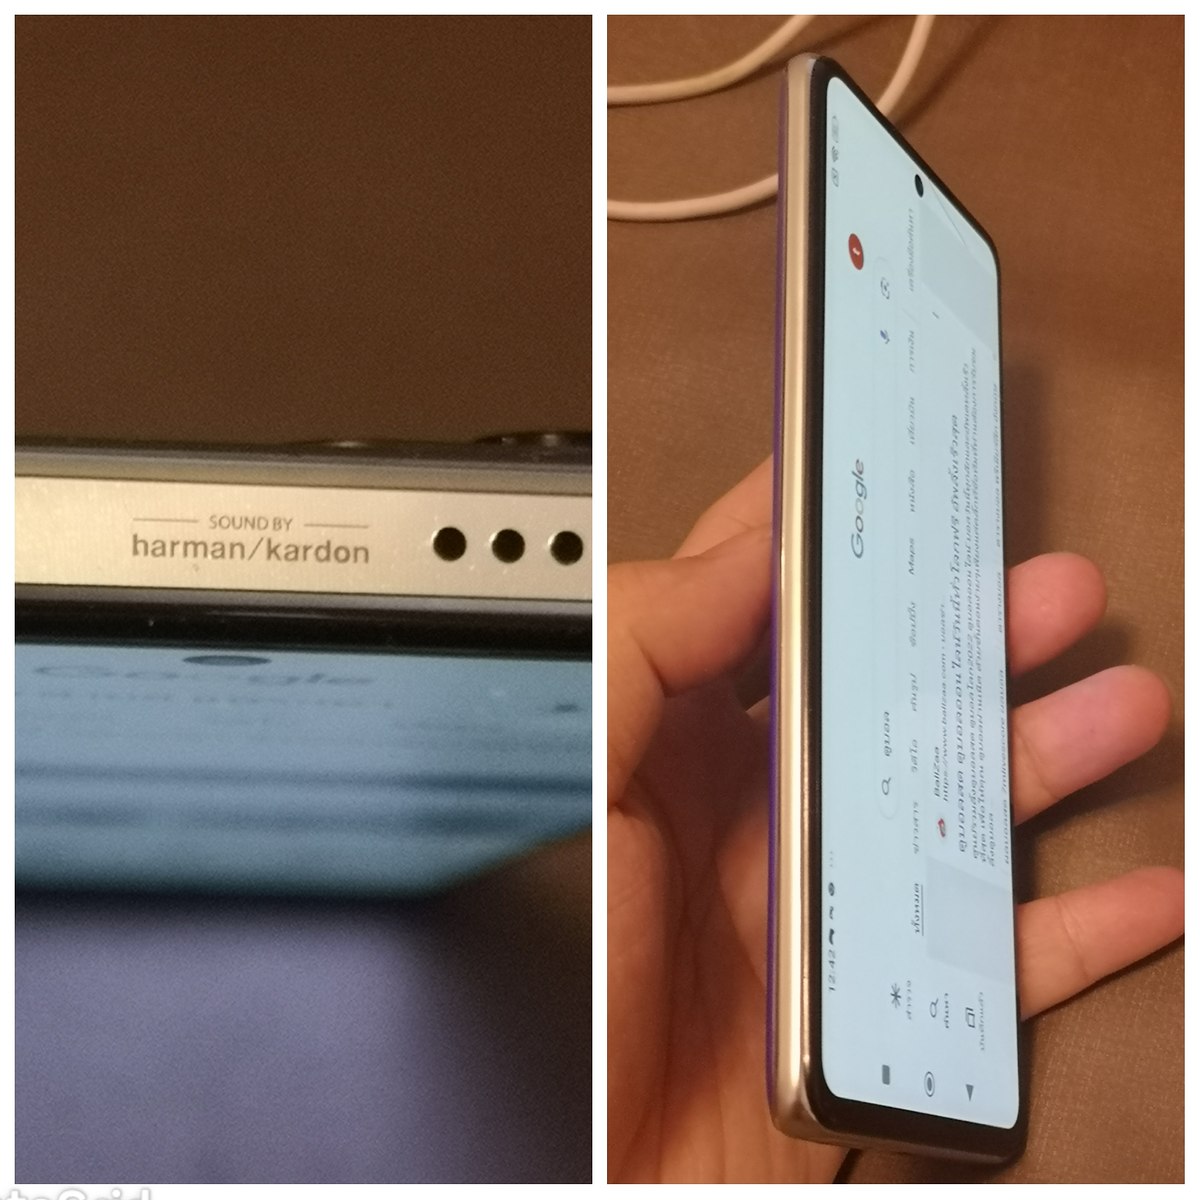 ขายมือถือ Xiaomi11TPro สีใหม่หายากCelestial Blue 8/256กิ๊ก  ราคา  5300 บาท  ส่ง 100 บาท

สภาพสวยๆ 